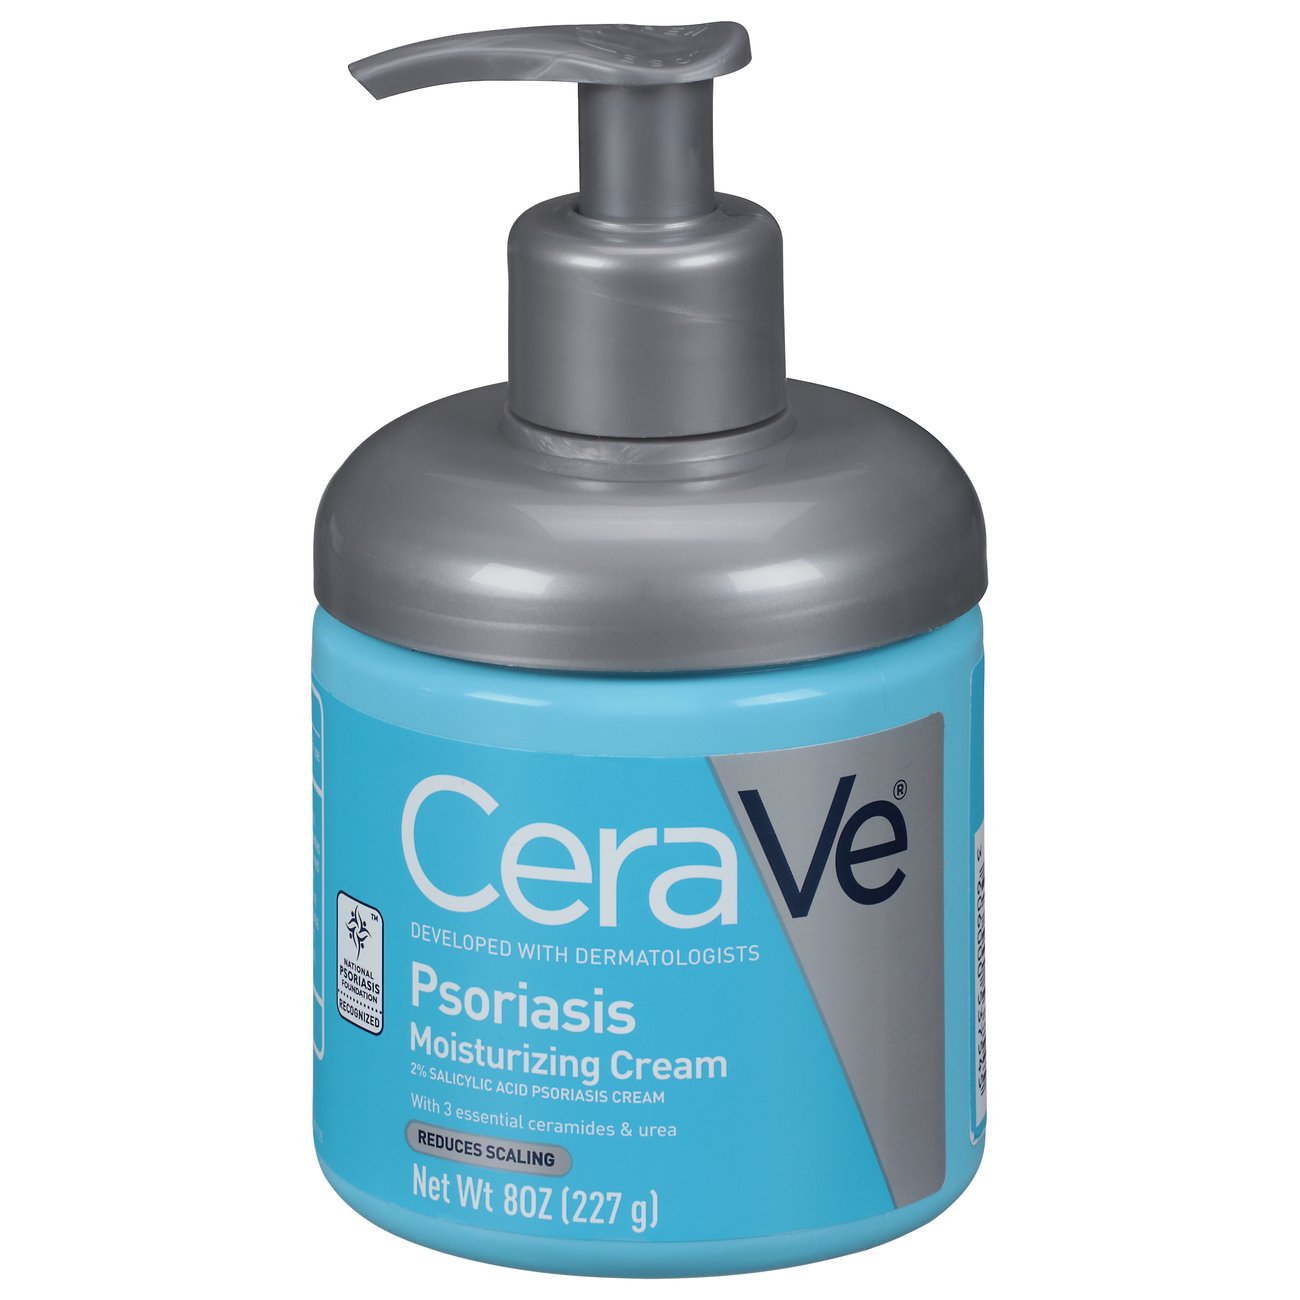 cerave psoriasis moisturizing cream price